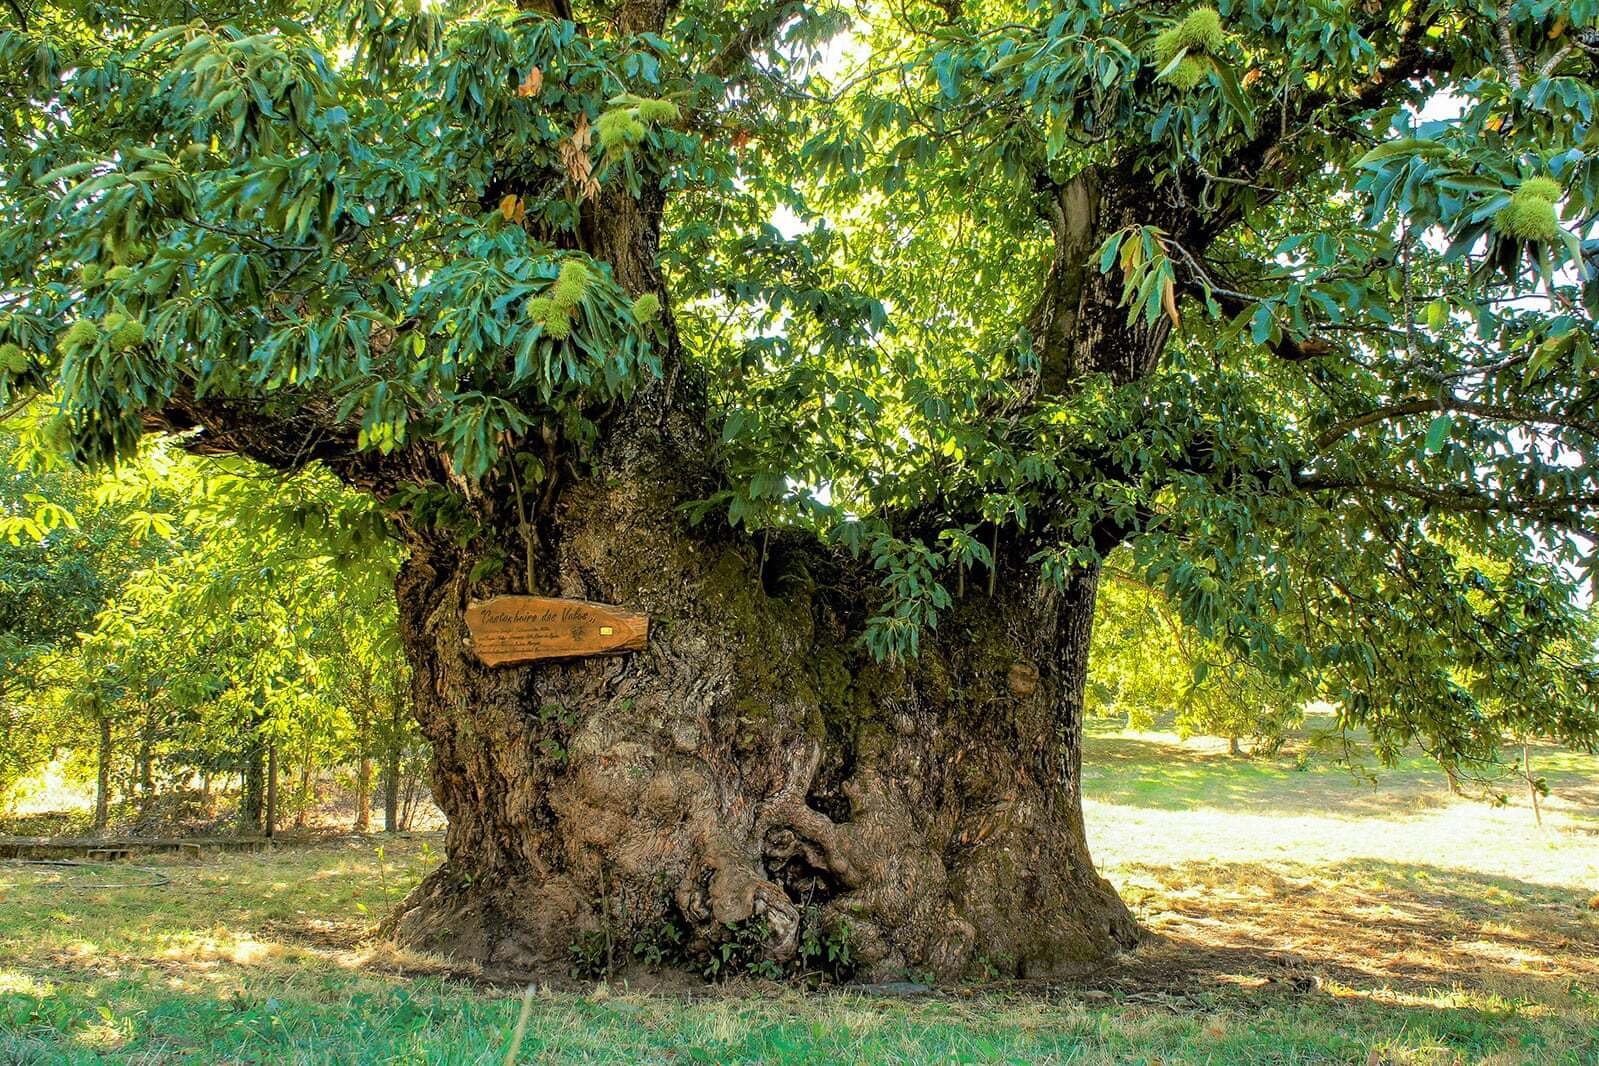 Это был огромный дуб. Дуб Пиренейский дерево. Дерево каштан Португалии. Самые большие дубы в Беловежской пуще. Каштан Иудино дерево.